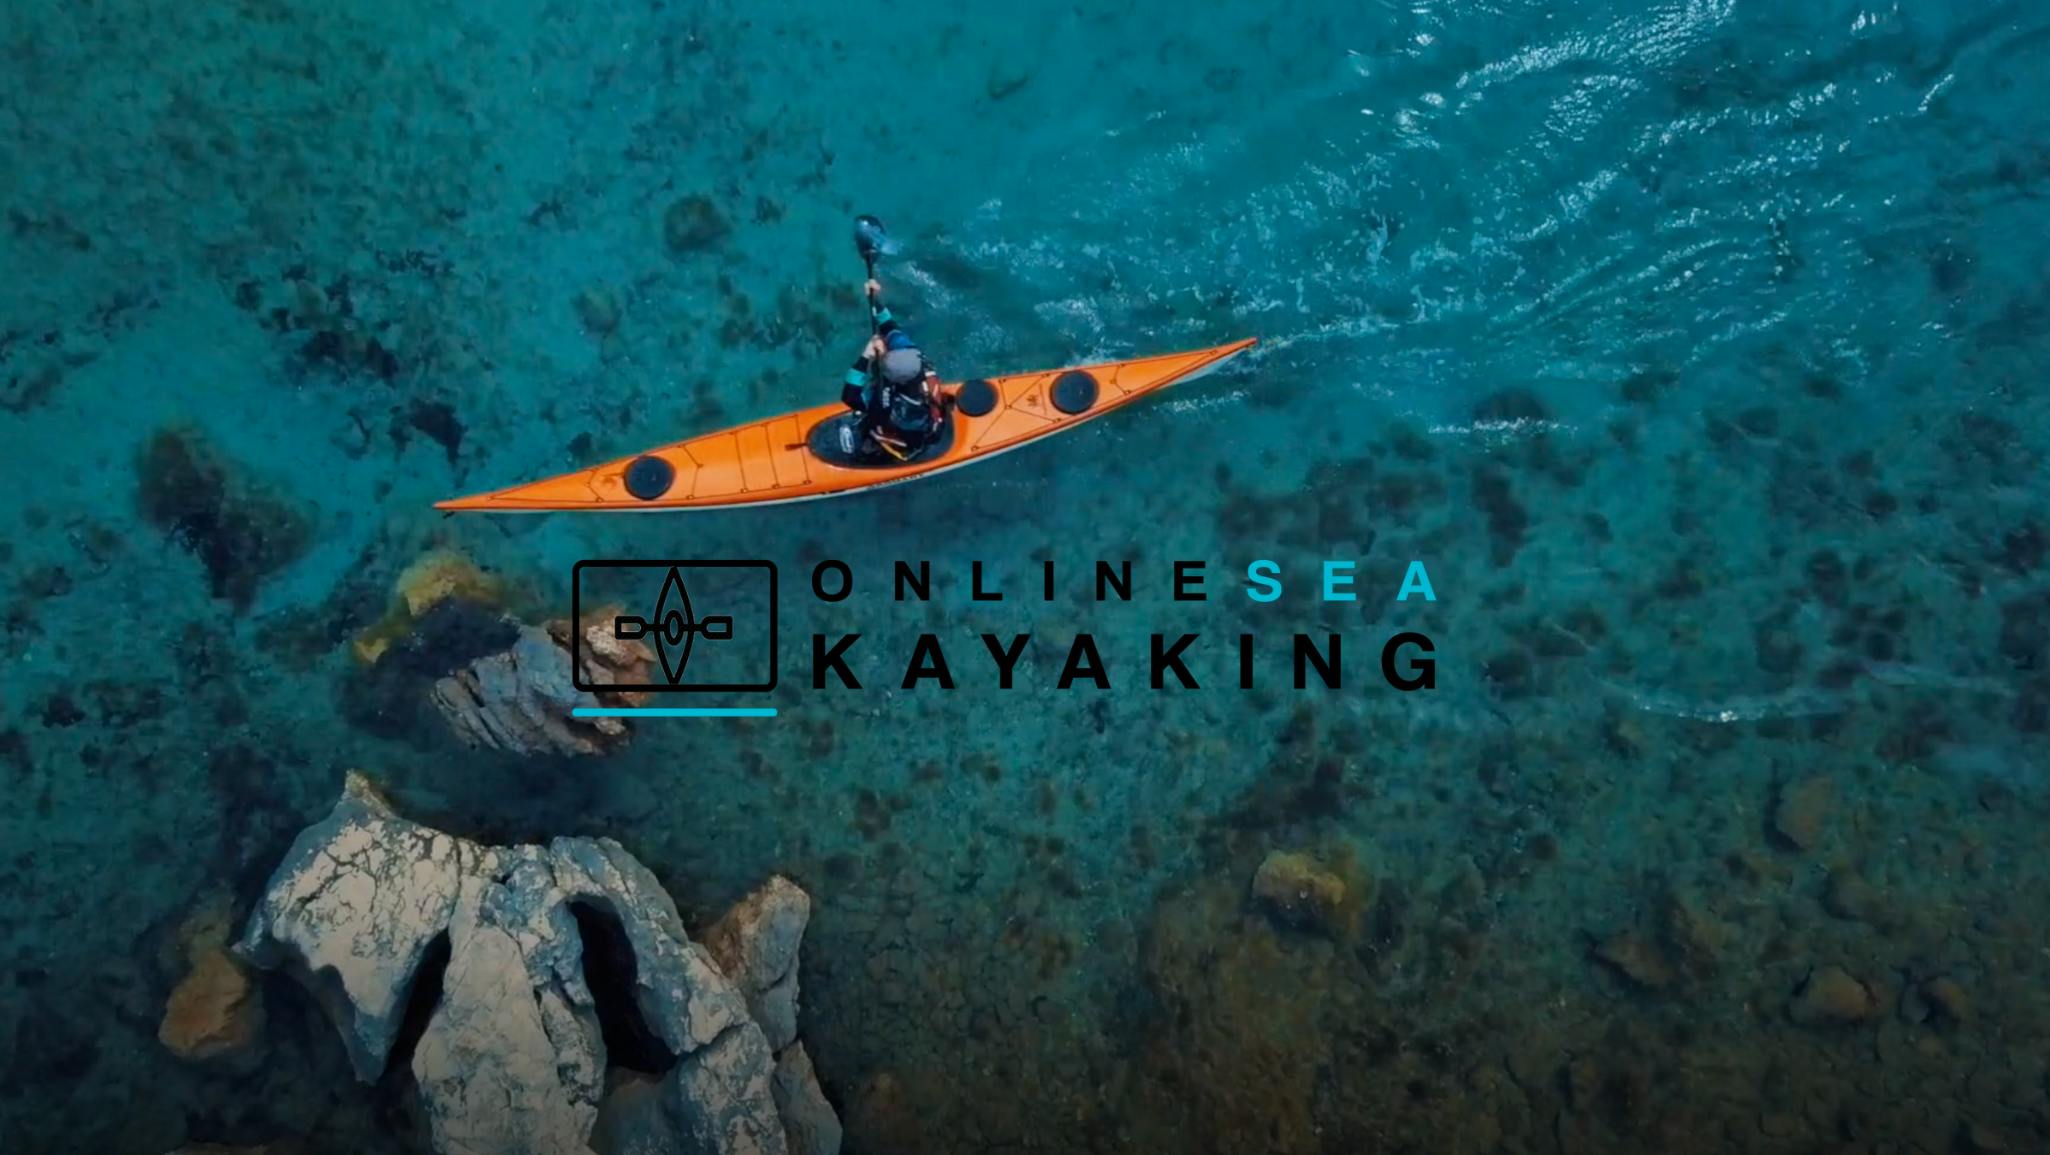 Online Sea Kayaking - Opplæringsvideo for havkajakk